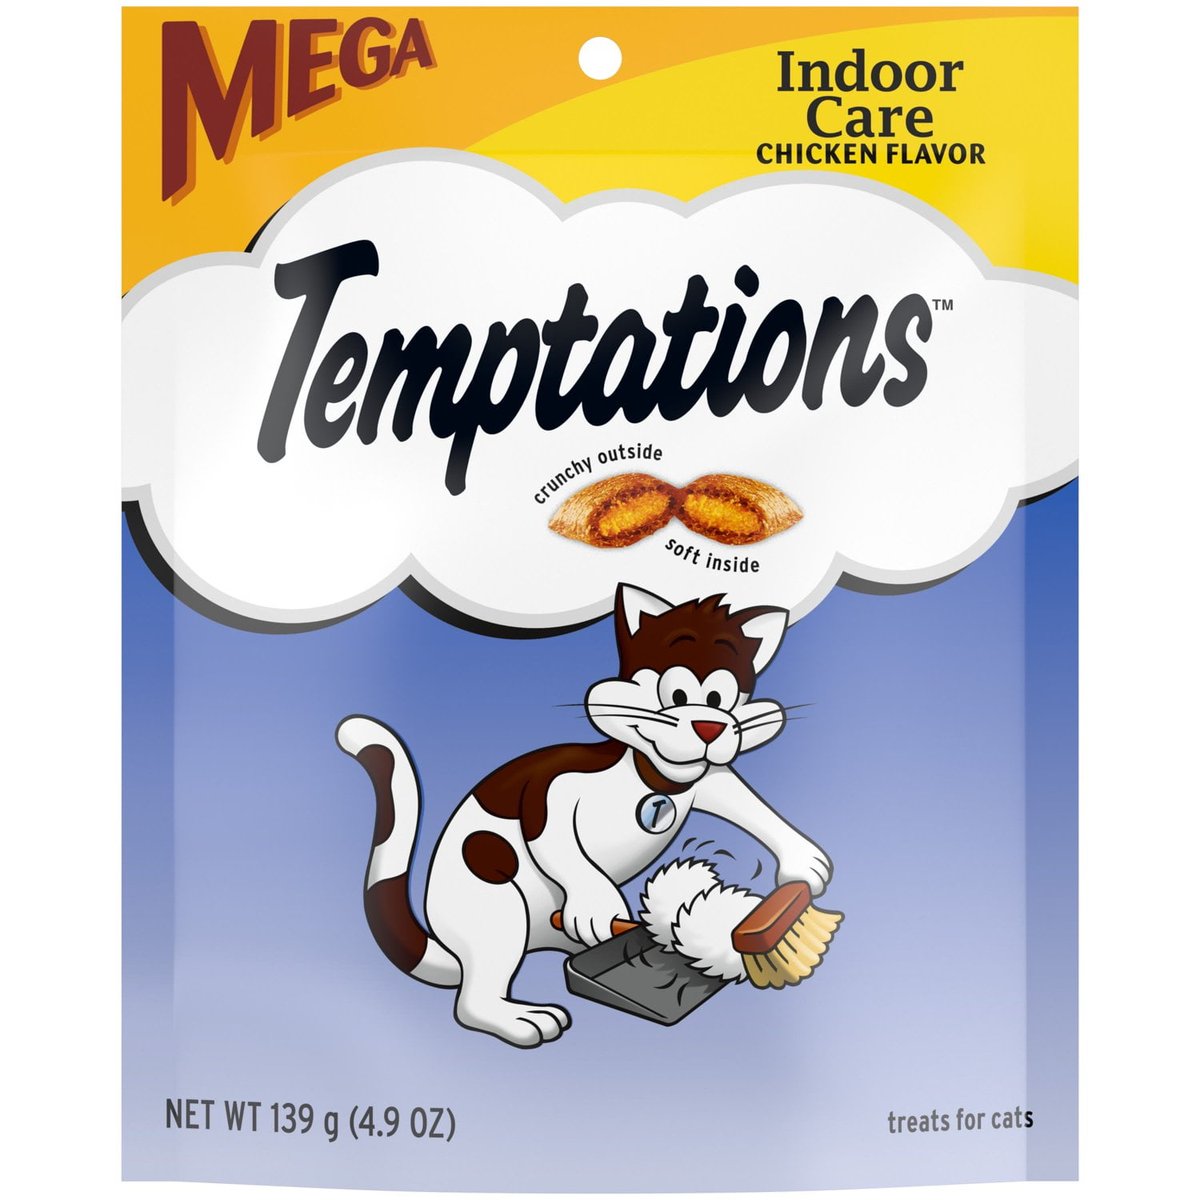 60% Off Temptations Chicken Flavor Crunchy Treats for Cats Mega Size 4.9 oz goto.walmart.com/baonzM #BwcDeals #Bitcoin #Arbitrage #Deals